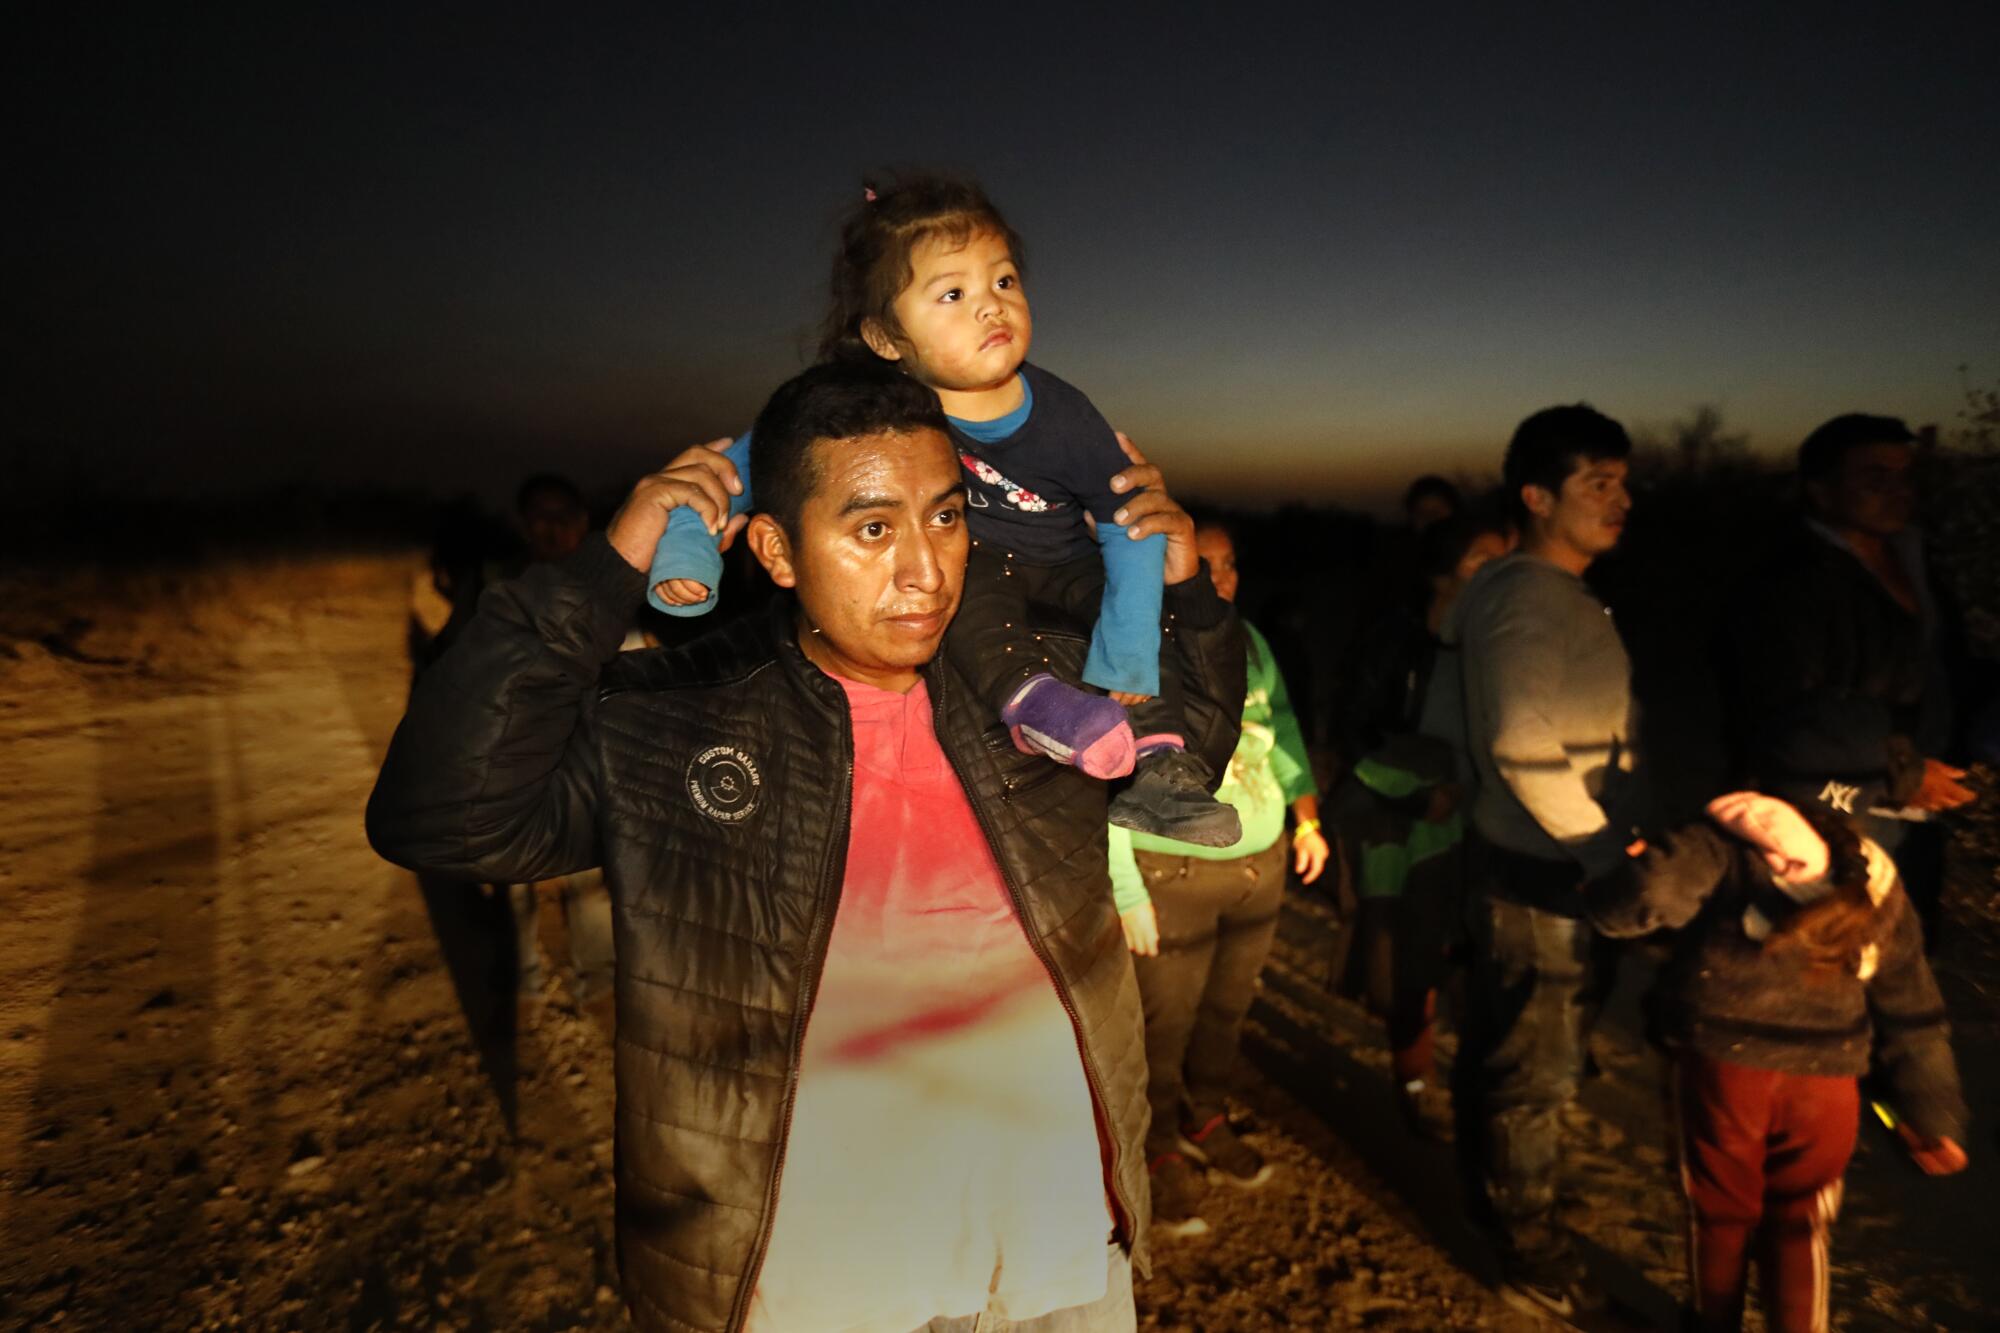  An asylum seeker carries a child 